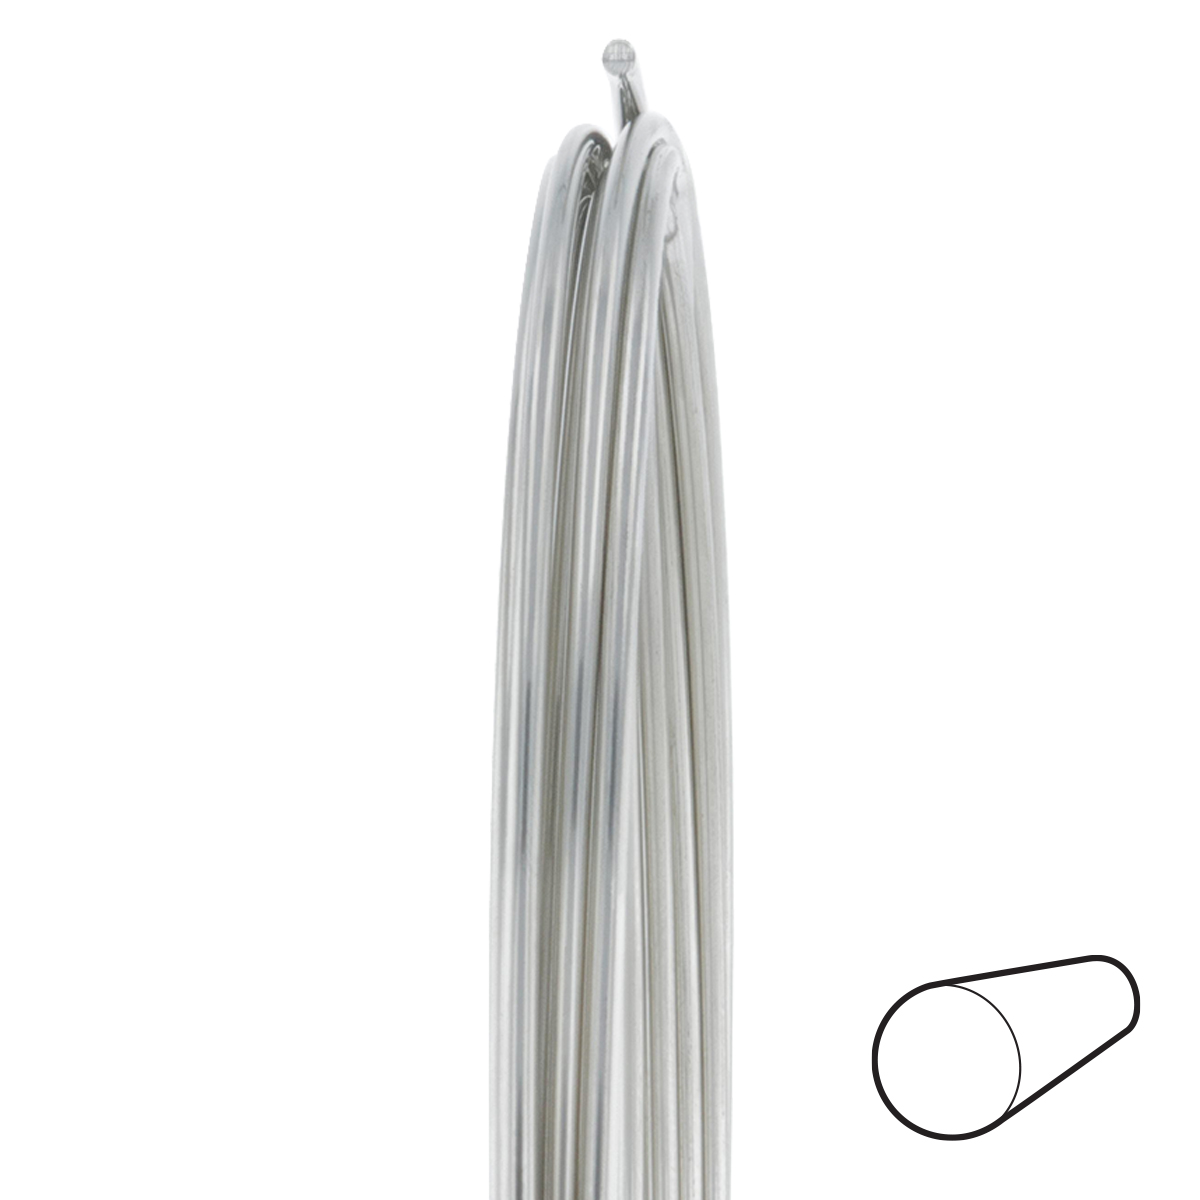 12 Gauge Round Dead Soft Nickel Silver Wire: Wire Jewelry, Wire Wrap  Tutorials